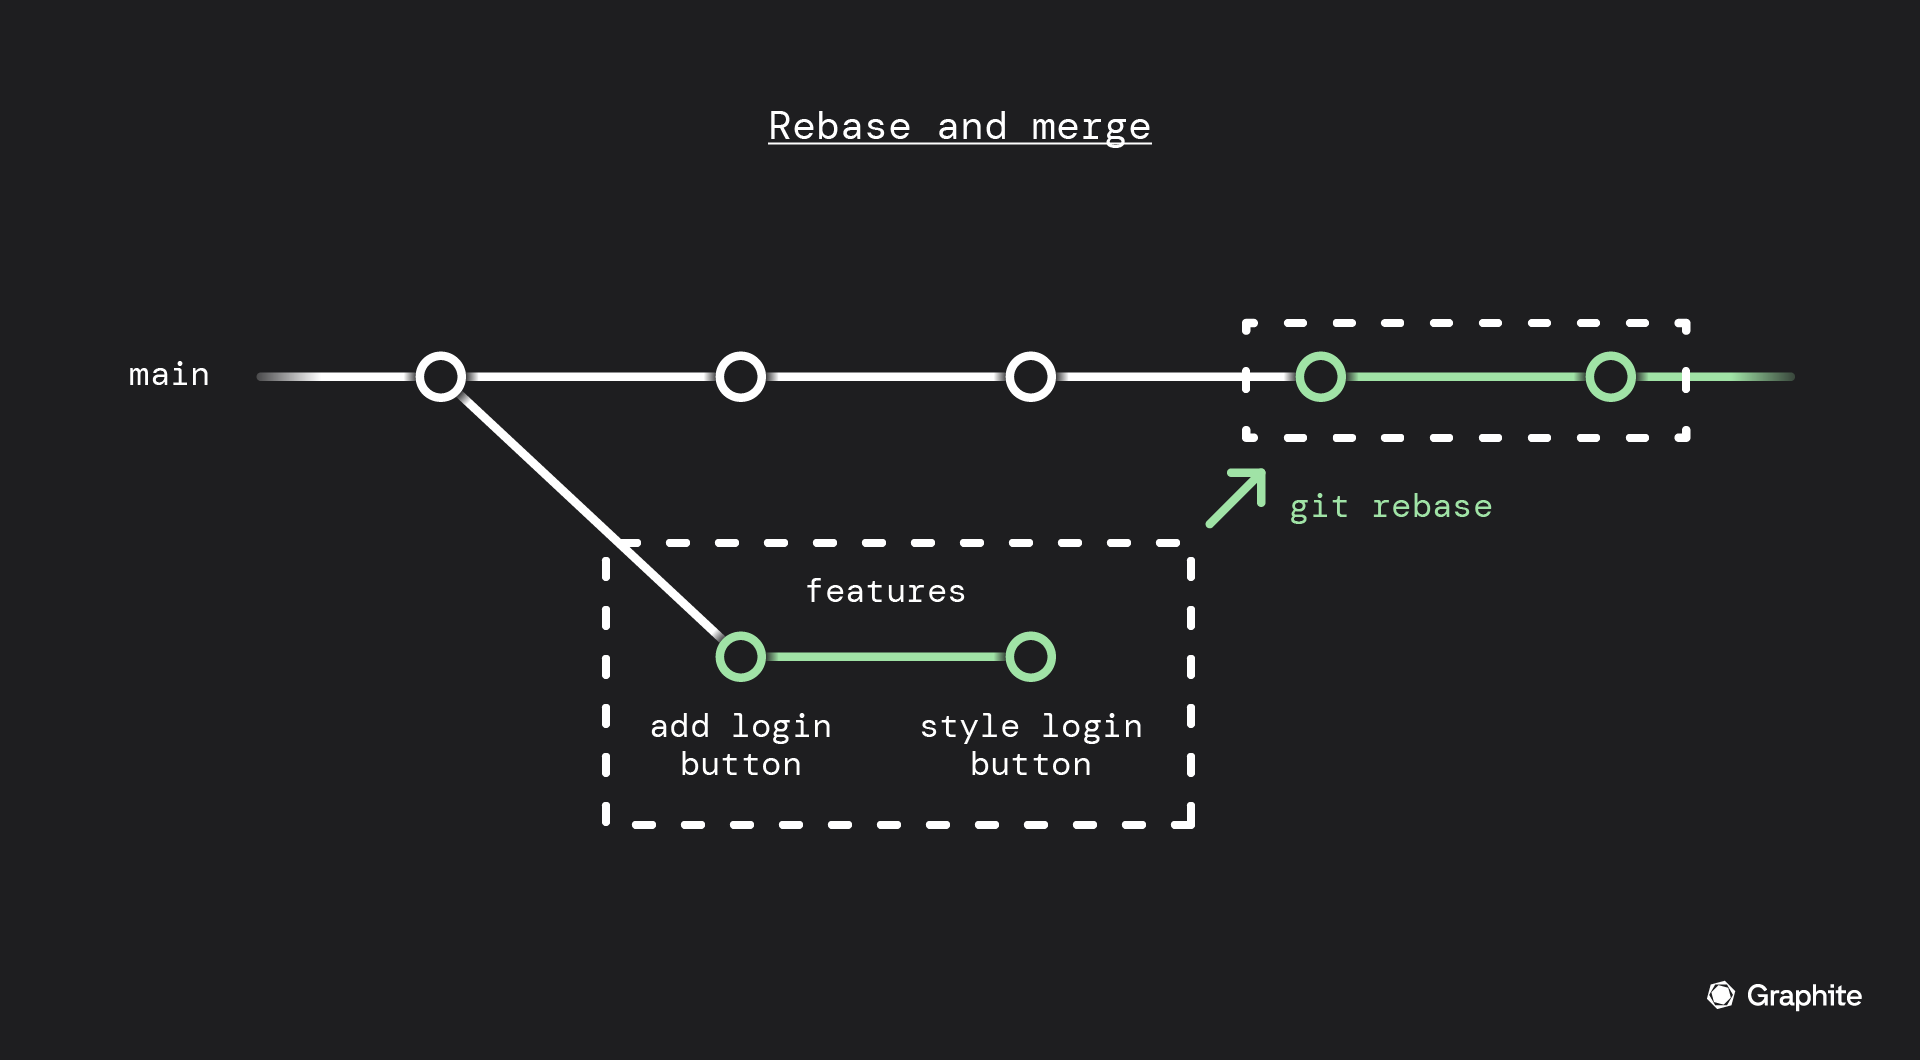 rebase and merge diagram